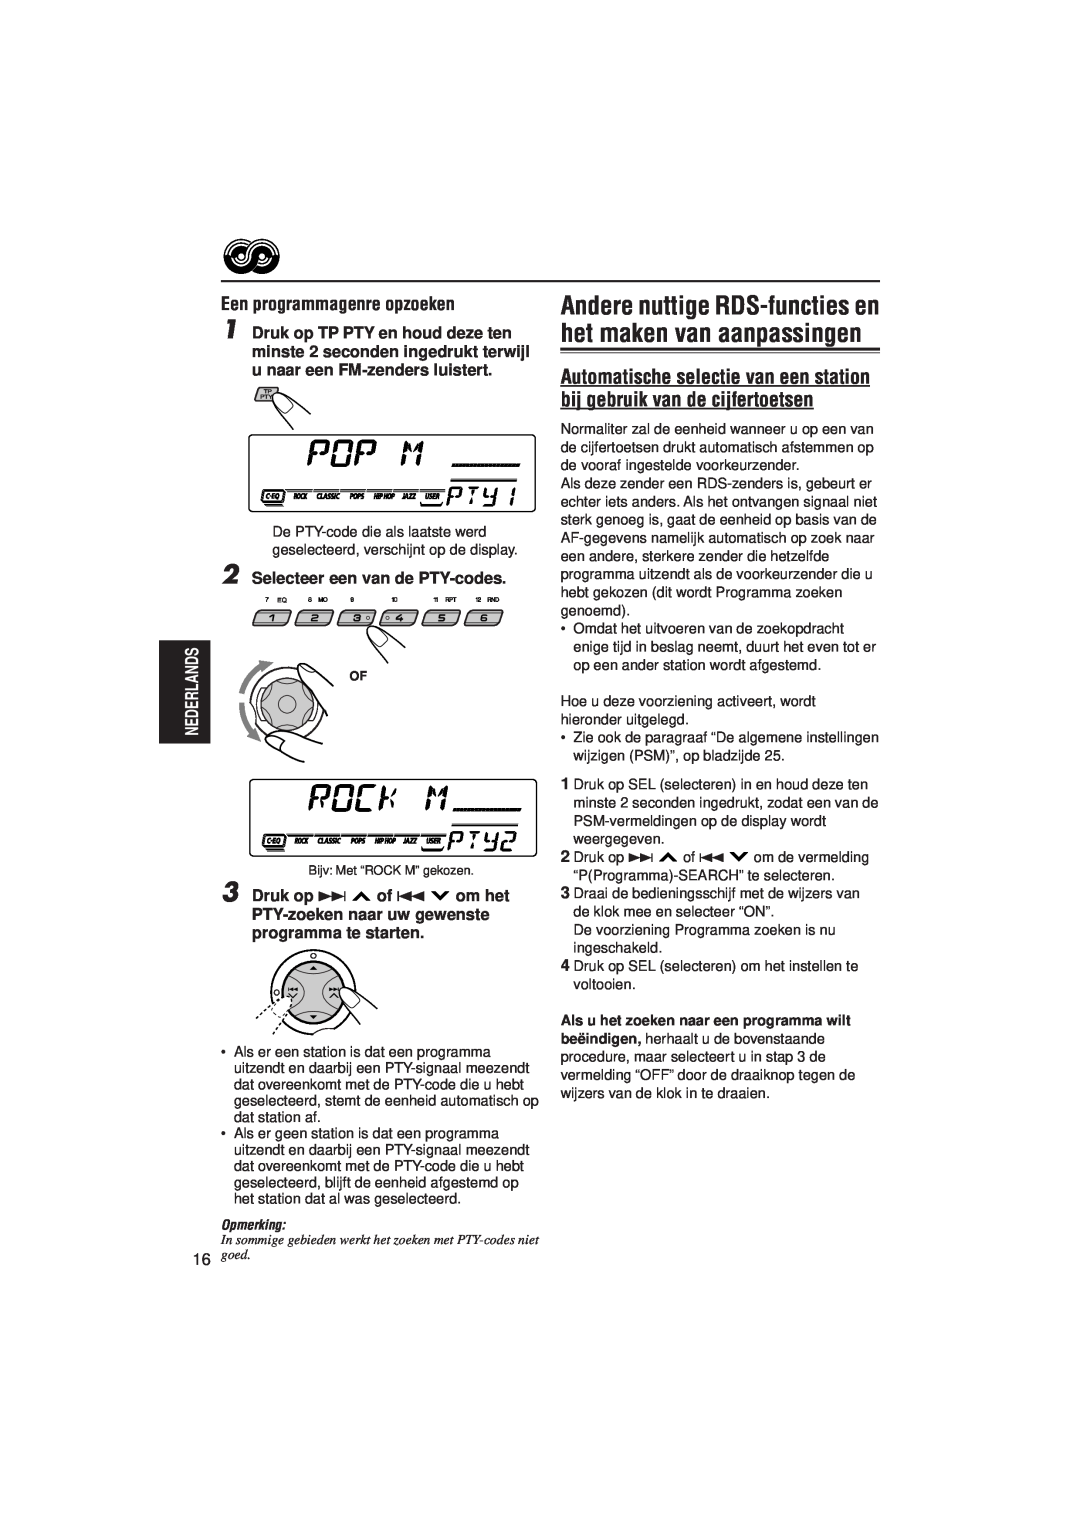 JVC KD-SX921R, KD-SX992R manual Een programmagenre opzoeken, Selecteer een van de PTY-codes, Druk op ¢ of 4 om het 